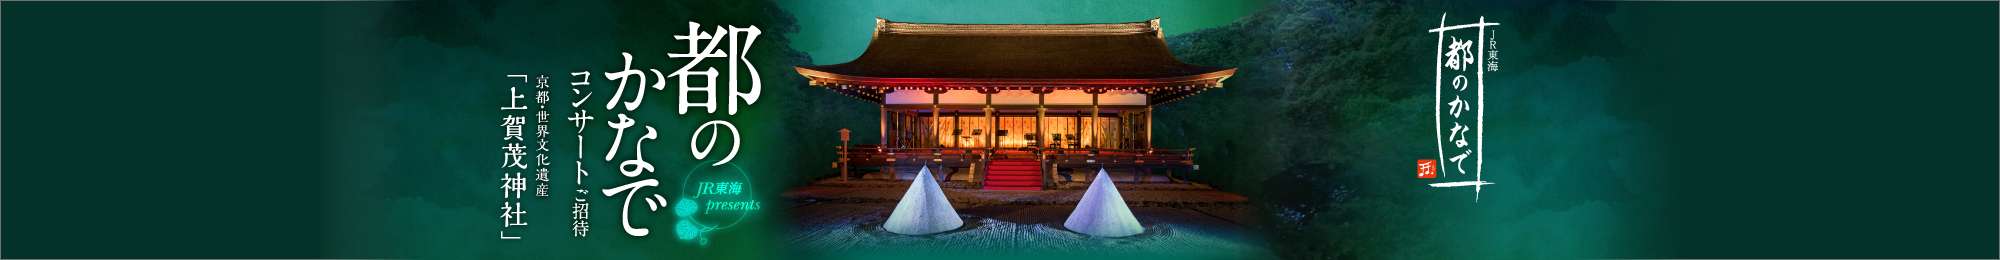 都のかなで コンサートご招待 京都・世界文化遺産 「上賀茂神社」